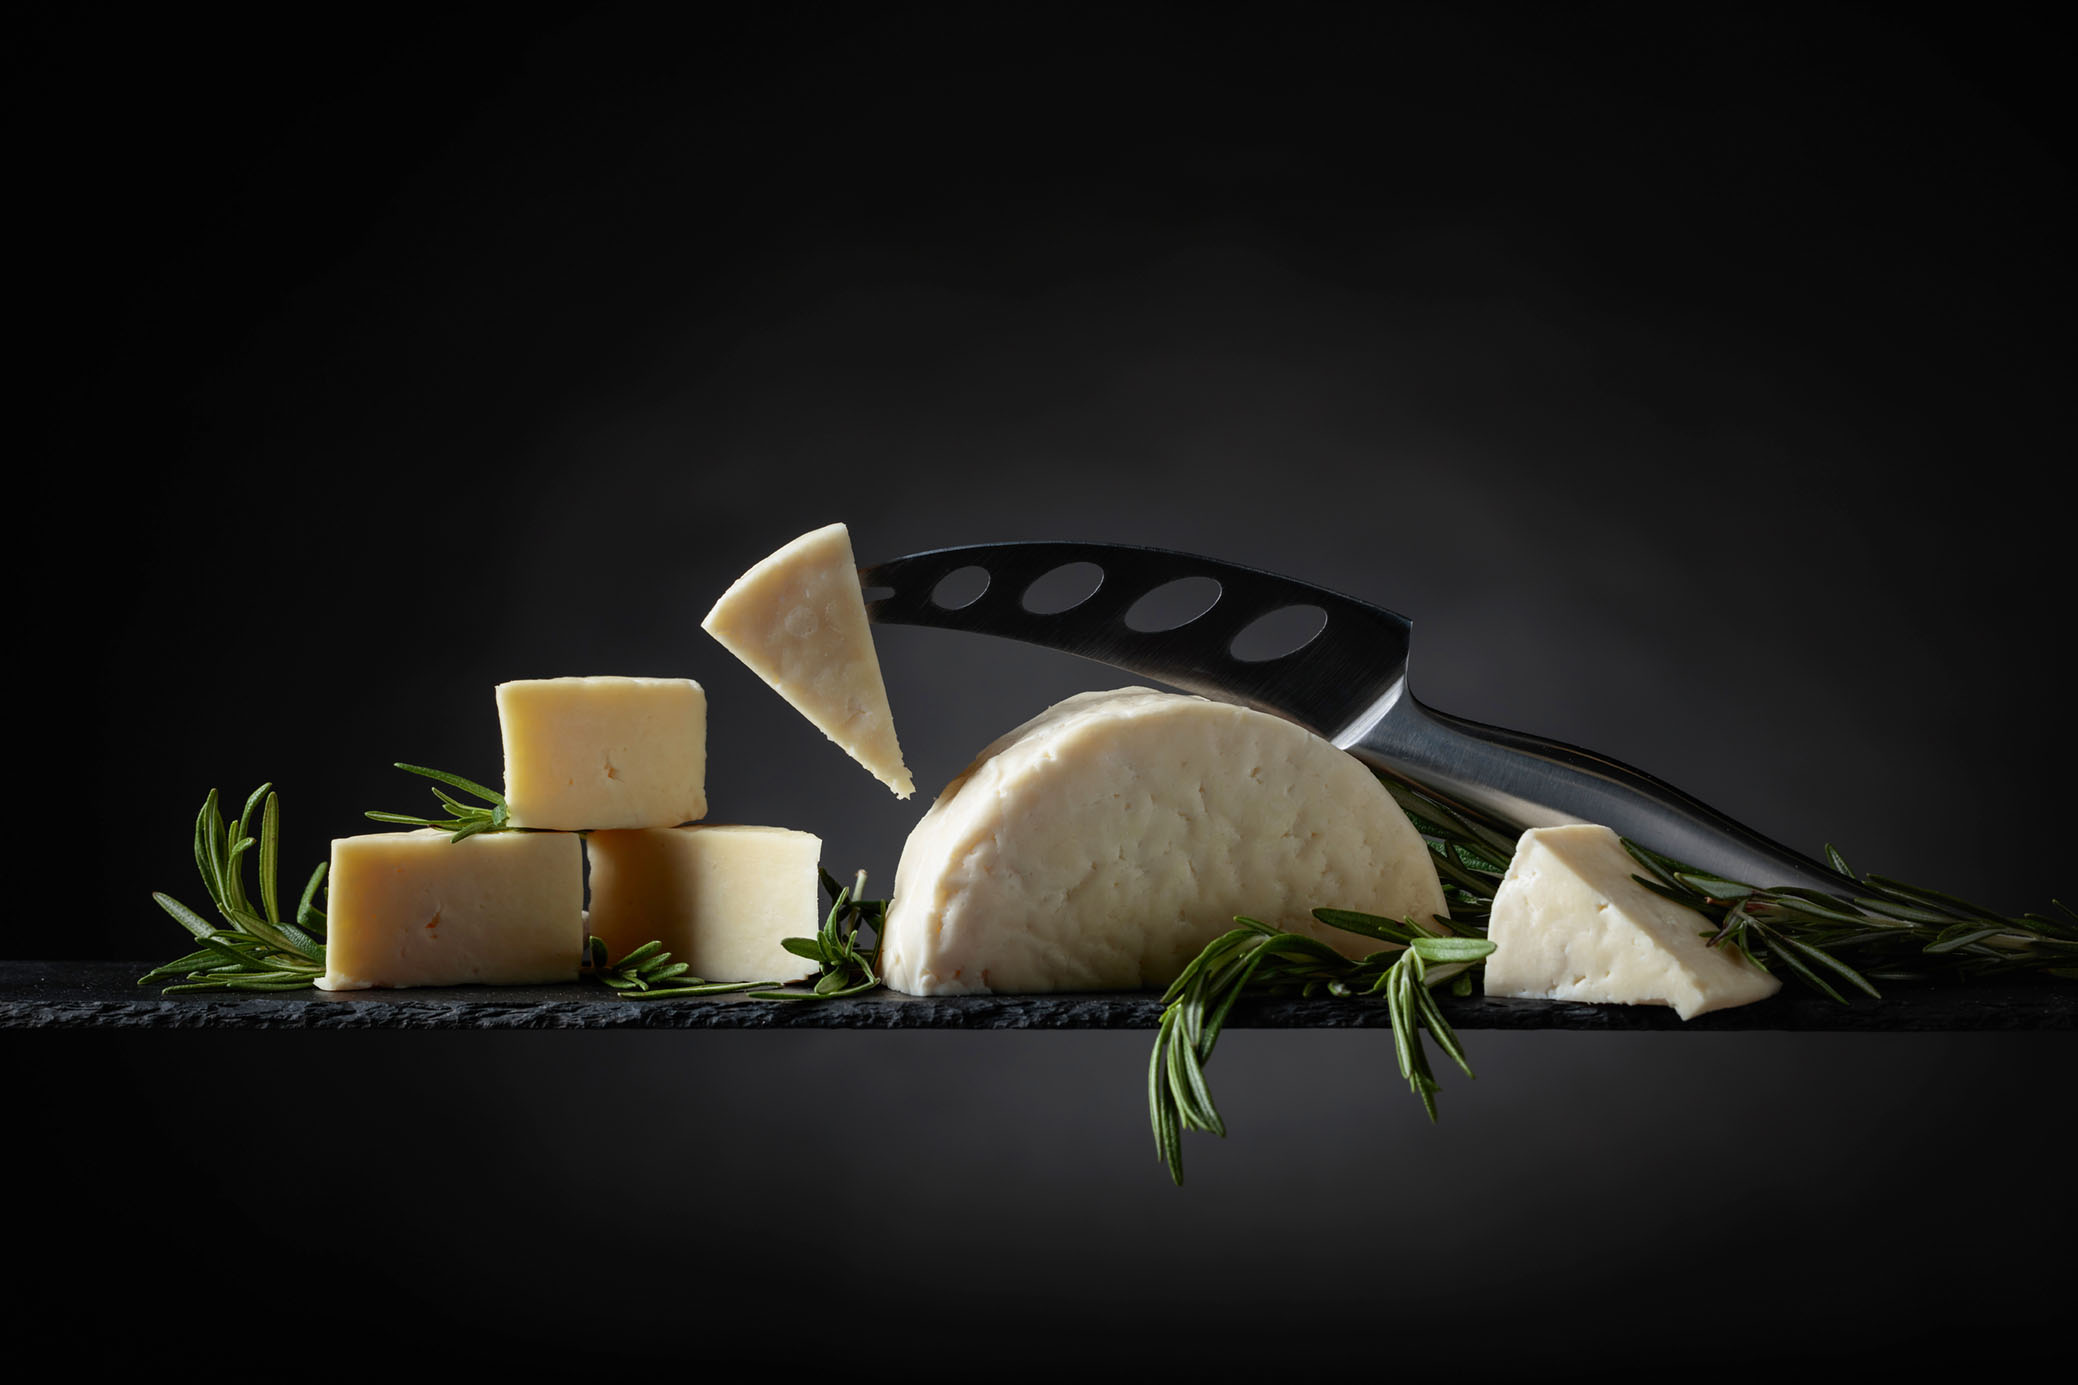 5 choses à savoir sur les fromages à la coupe